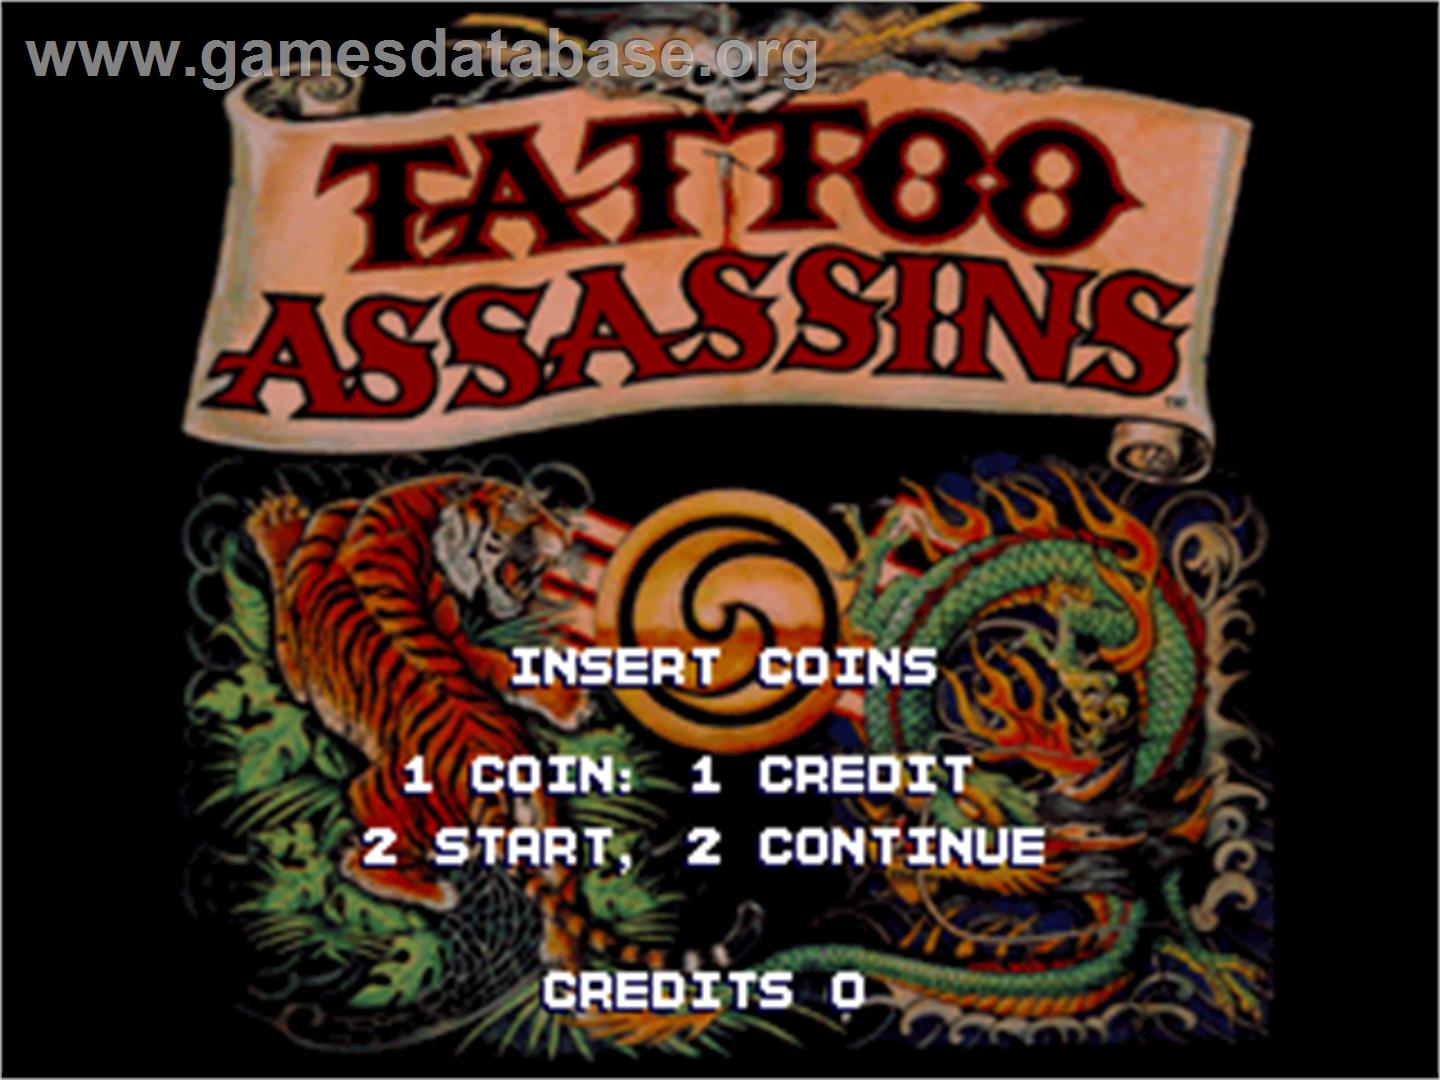 Tattoo Assassins - Arcade - Artwork - Title Screen